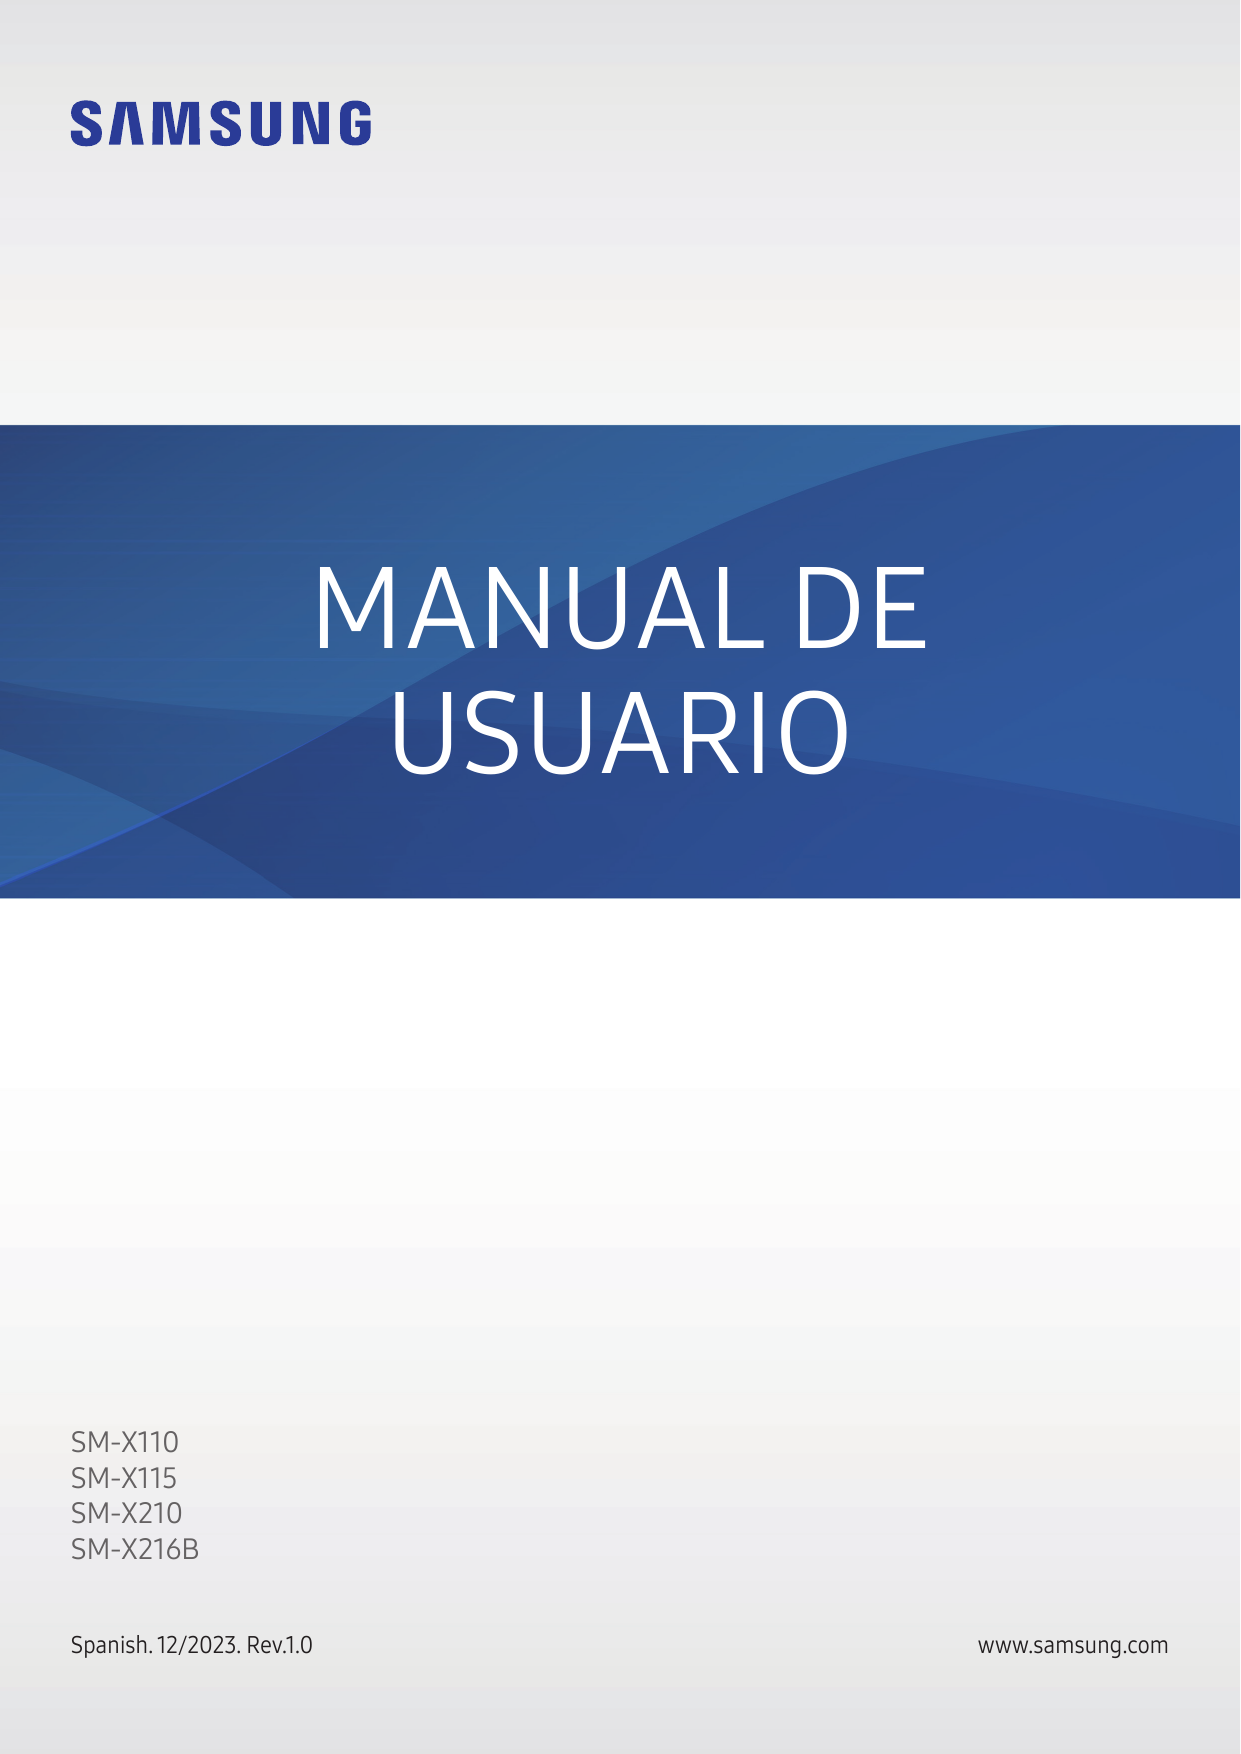 MANUAL DEUSUARIOSM-X110SM-X115SM-X210SM-X216BSpanish. 12/2023. Rev.1.0www.samsung.com